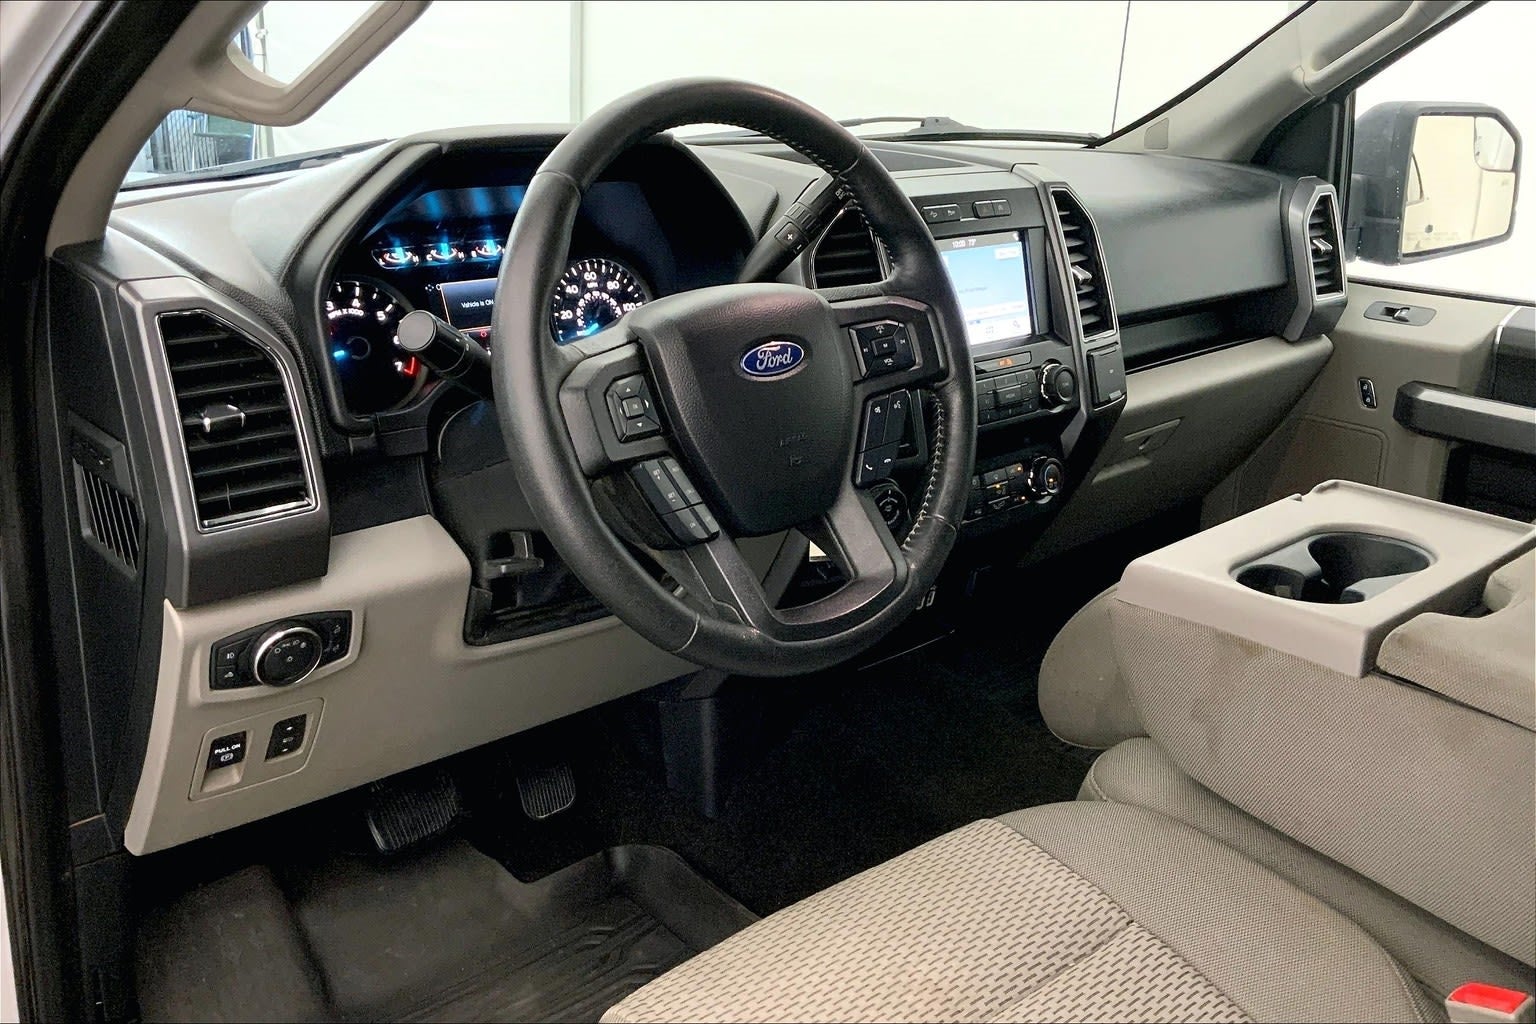 f150 limited interior description - Google Search | Ford f150, Ford, Ford  f150 interior